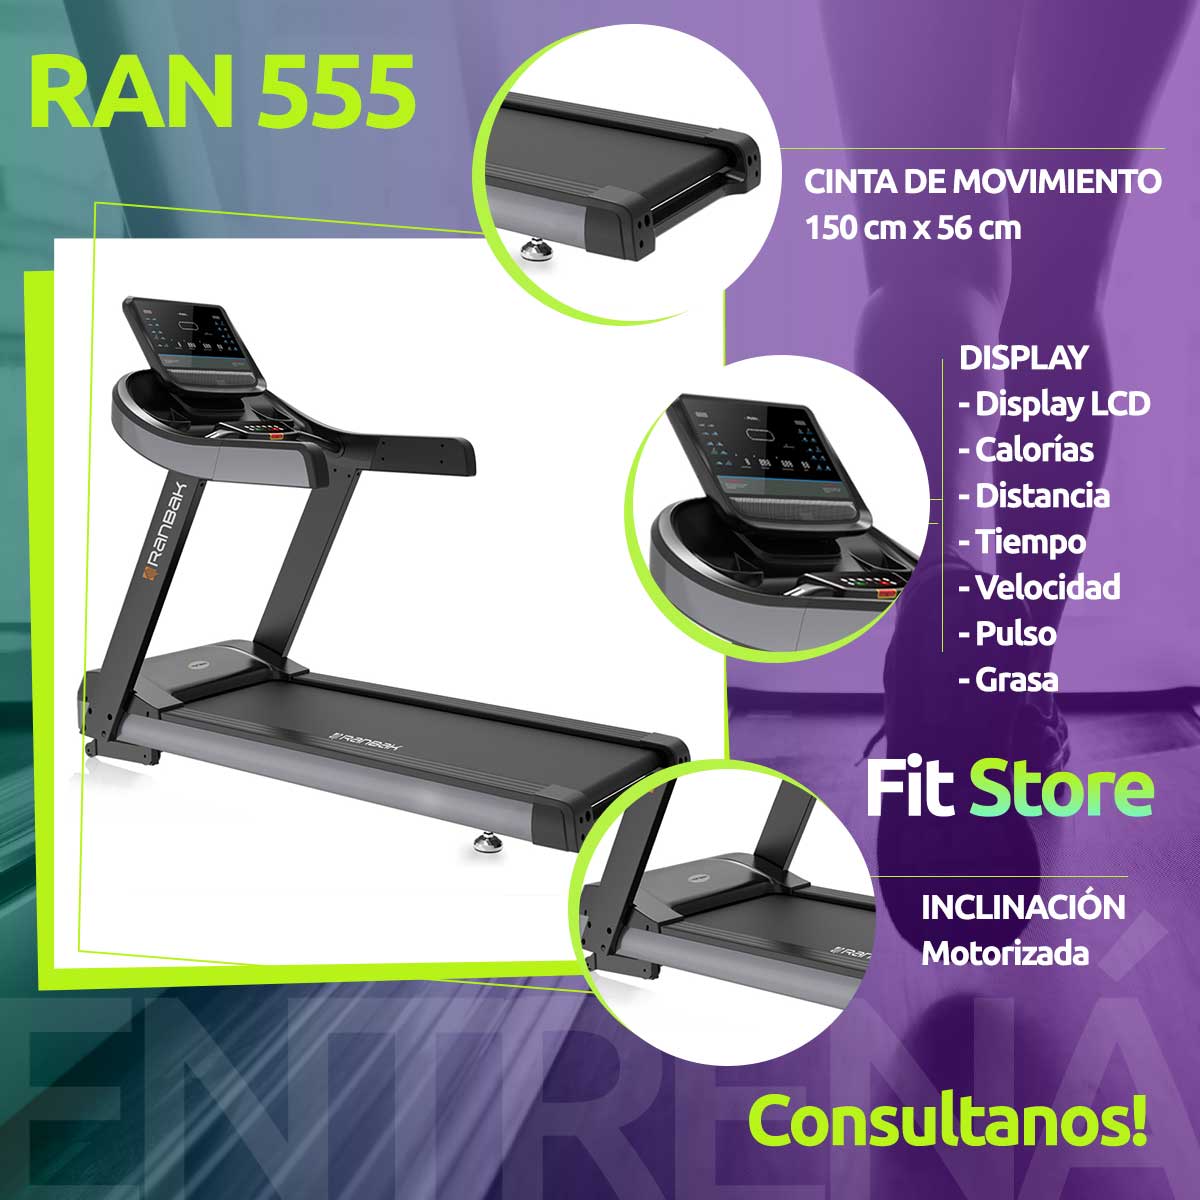 Cinta para Correr y Caminar Ran 555 - Fit Store - Equipos Fitness Hogar